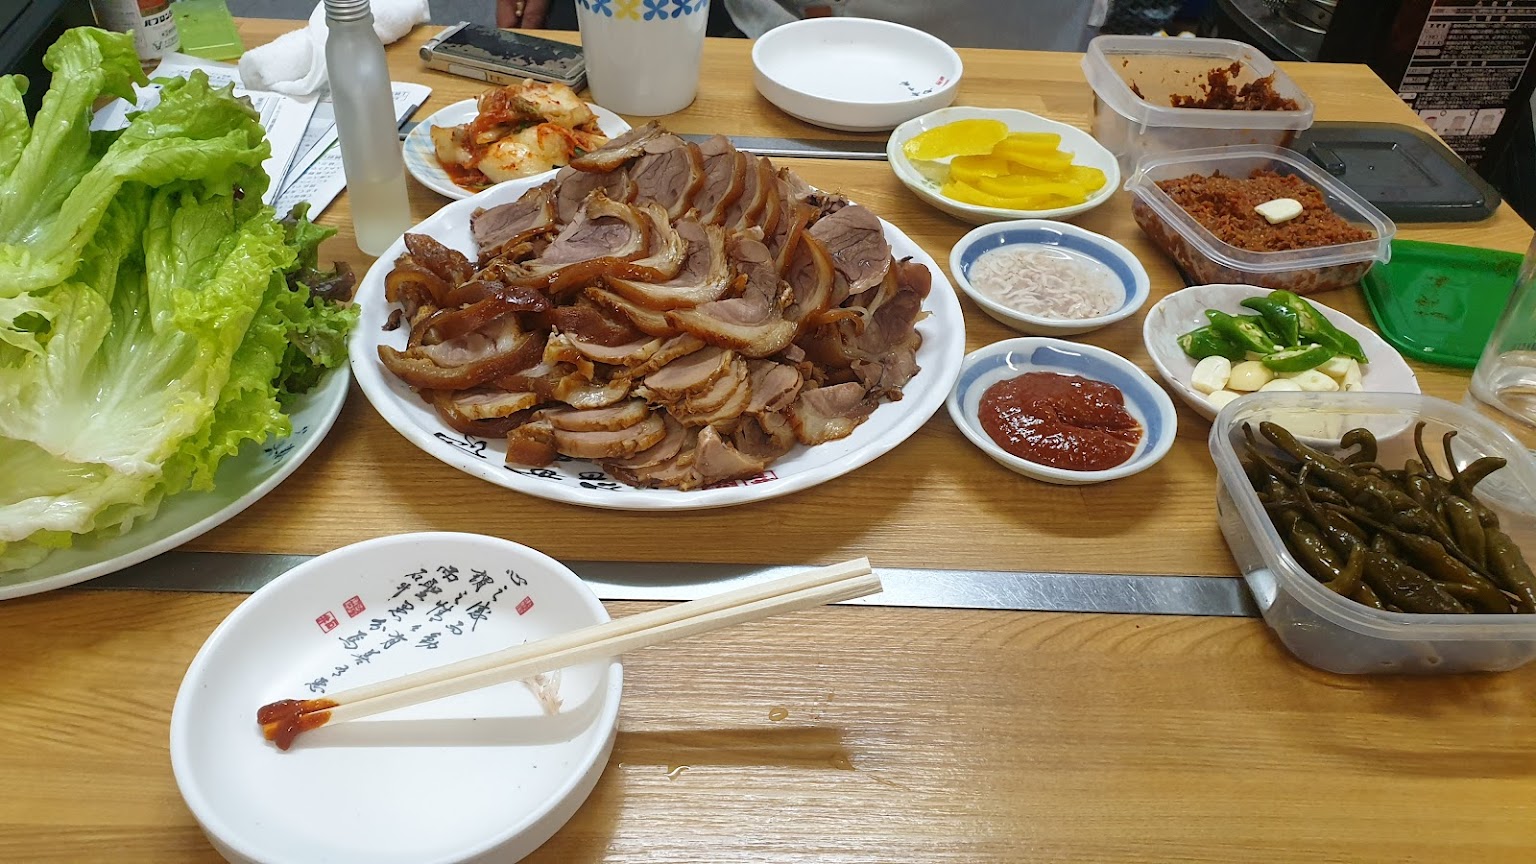 日本で営業されている韓国風中華料理店